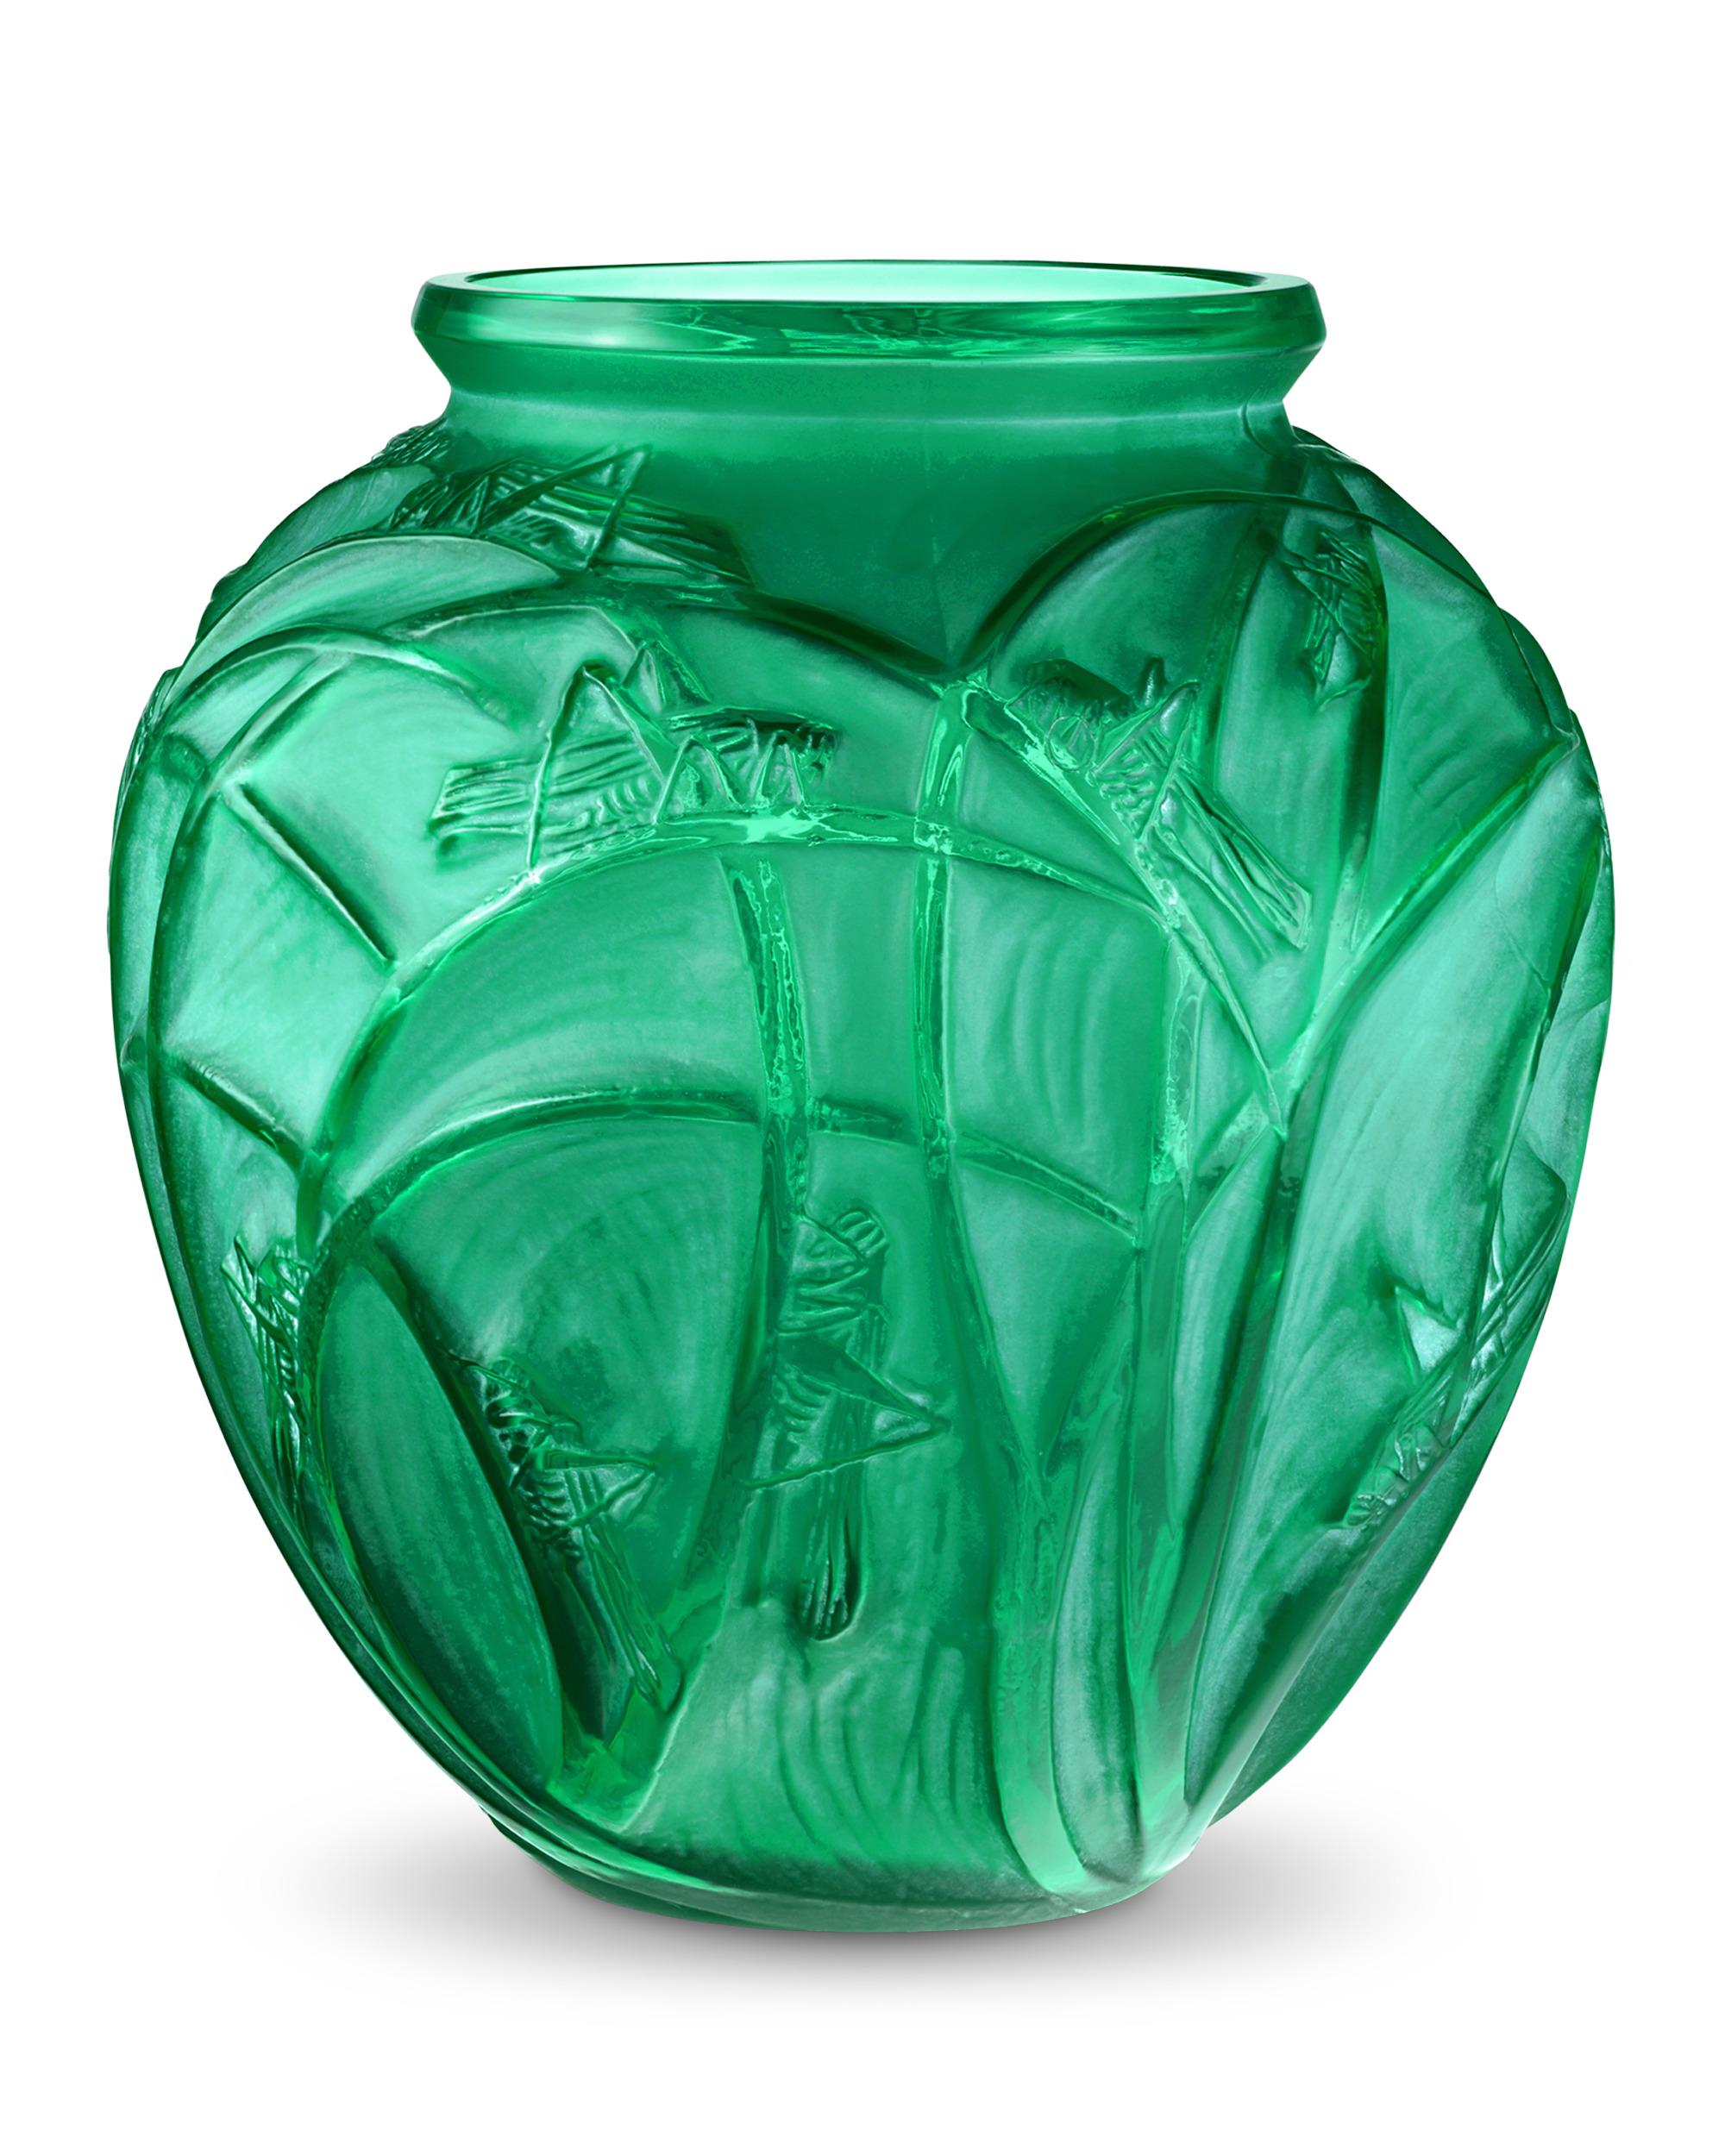 Diese Vase mit dem Muster Sauterelles wurde 1912 von René Lalique entworfen und zeigt Details von skurrilen Heuschrecken, die auf langen Schilf- oder Grashalmen ruhen. Das Gefäß unterstreicht die Vorliebe des Meisters für die kühnen Formen und